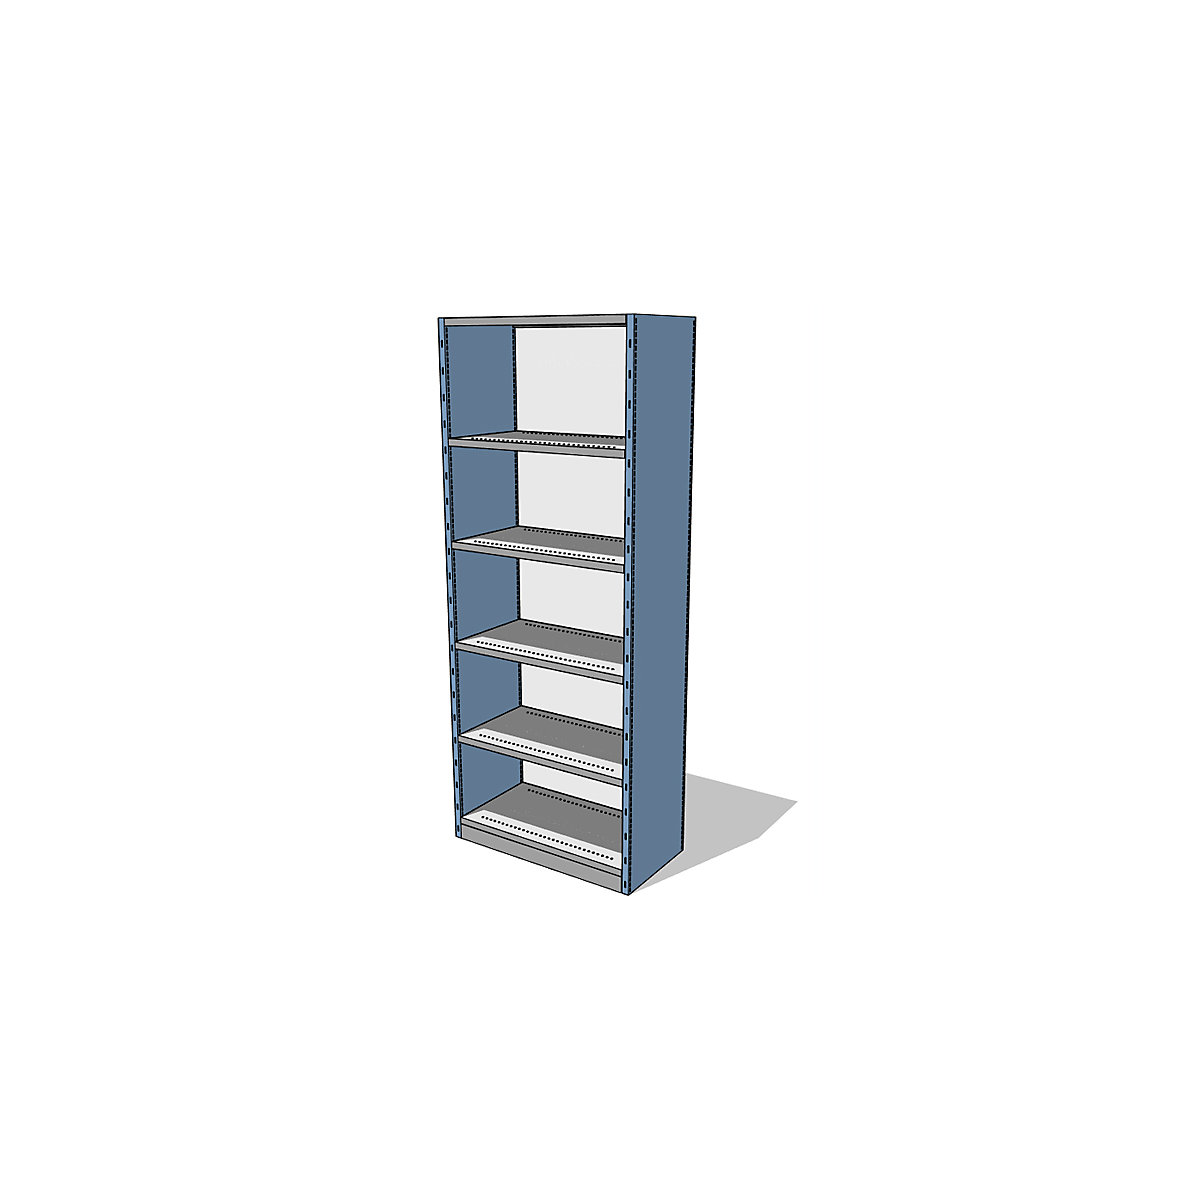 Sistema de estantes e armários com painéis laterais e traseiro, altura da estante 2500 mm, estante básica largura x profundidade 930 x 500 mm-5